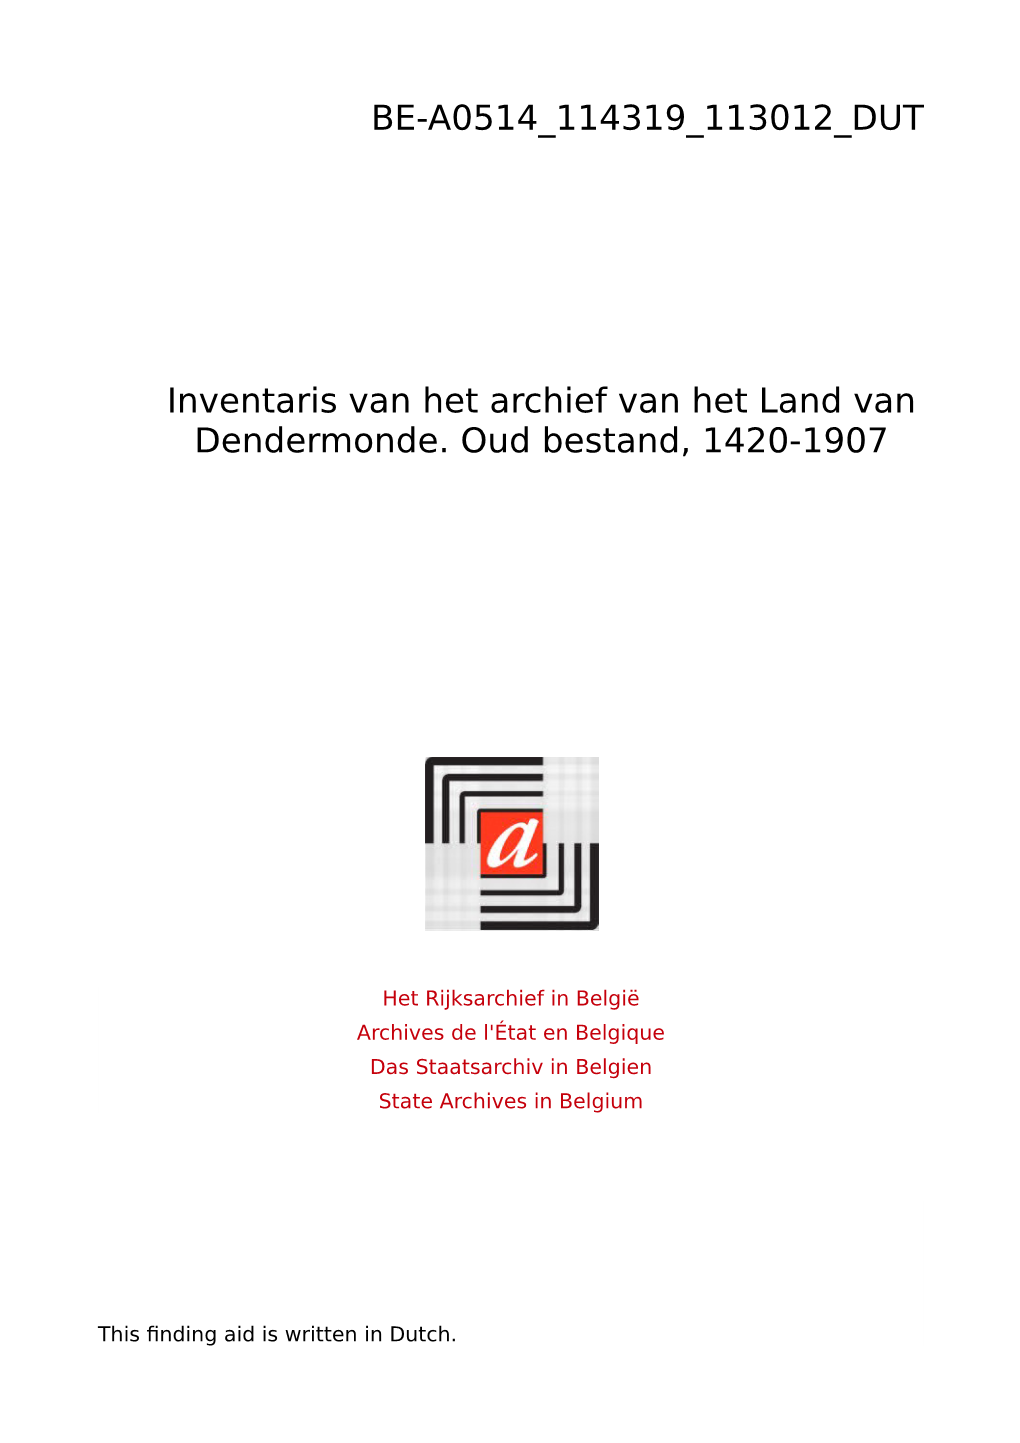 Land Van Dendermonde Archief 0000